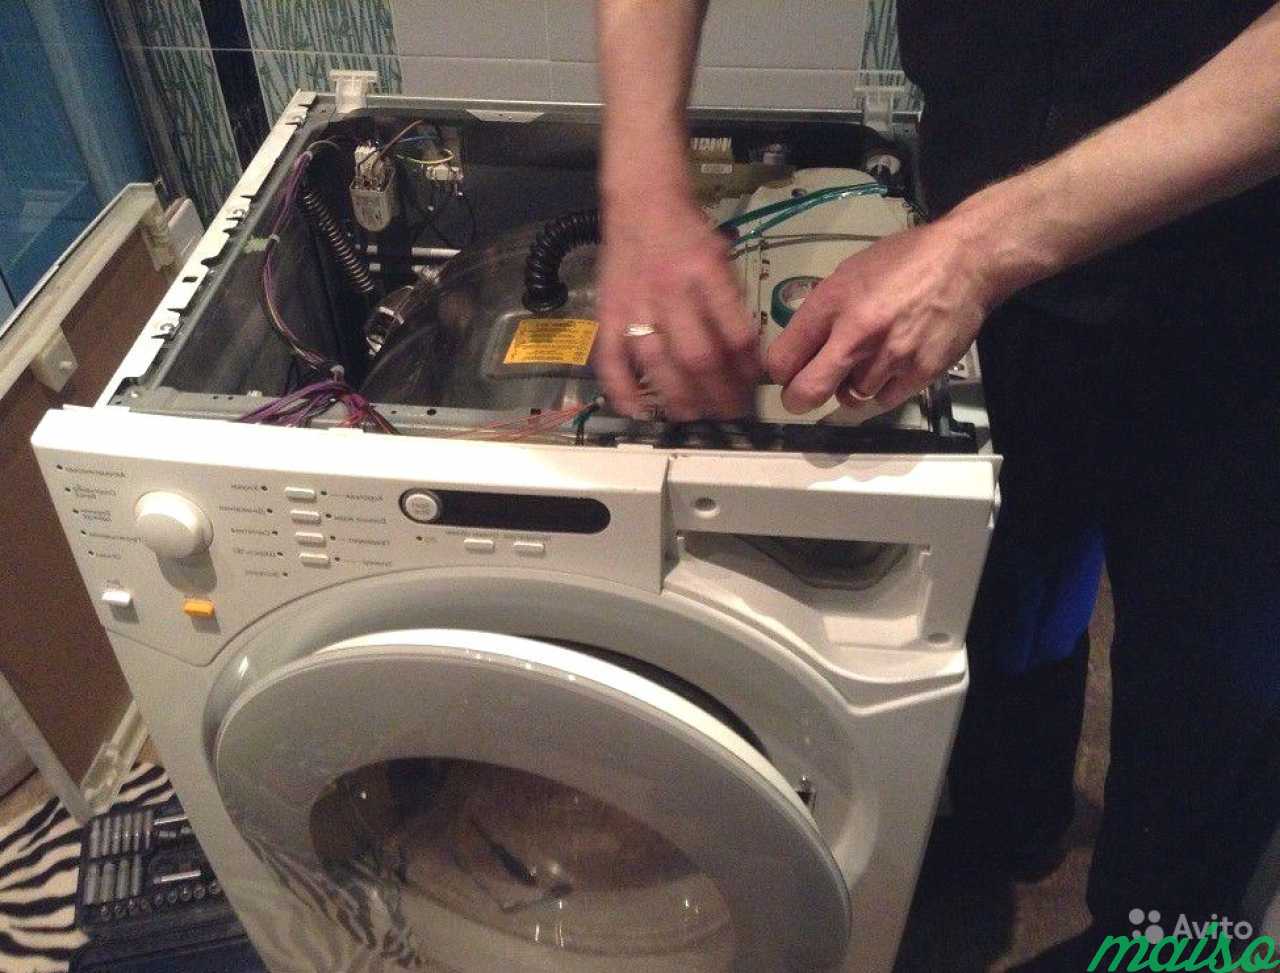 Ремонтировать стиральные машинки. Ремонт стиральных машин. Мастер по ремонту стиральных машинок. Мастер по стиральным машинам. Сломалась стиральная машина.